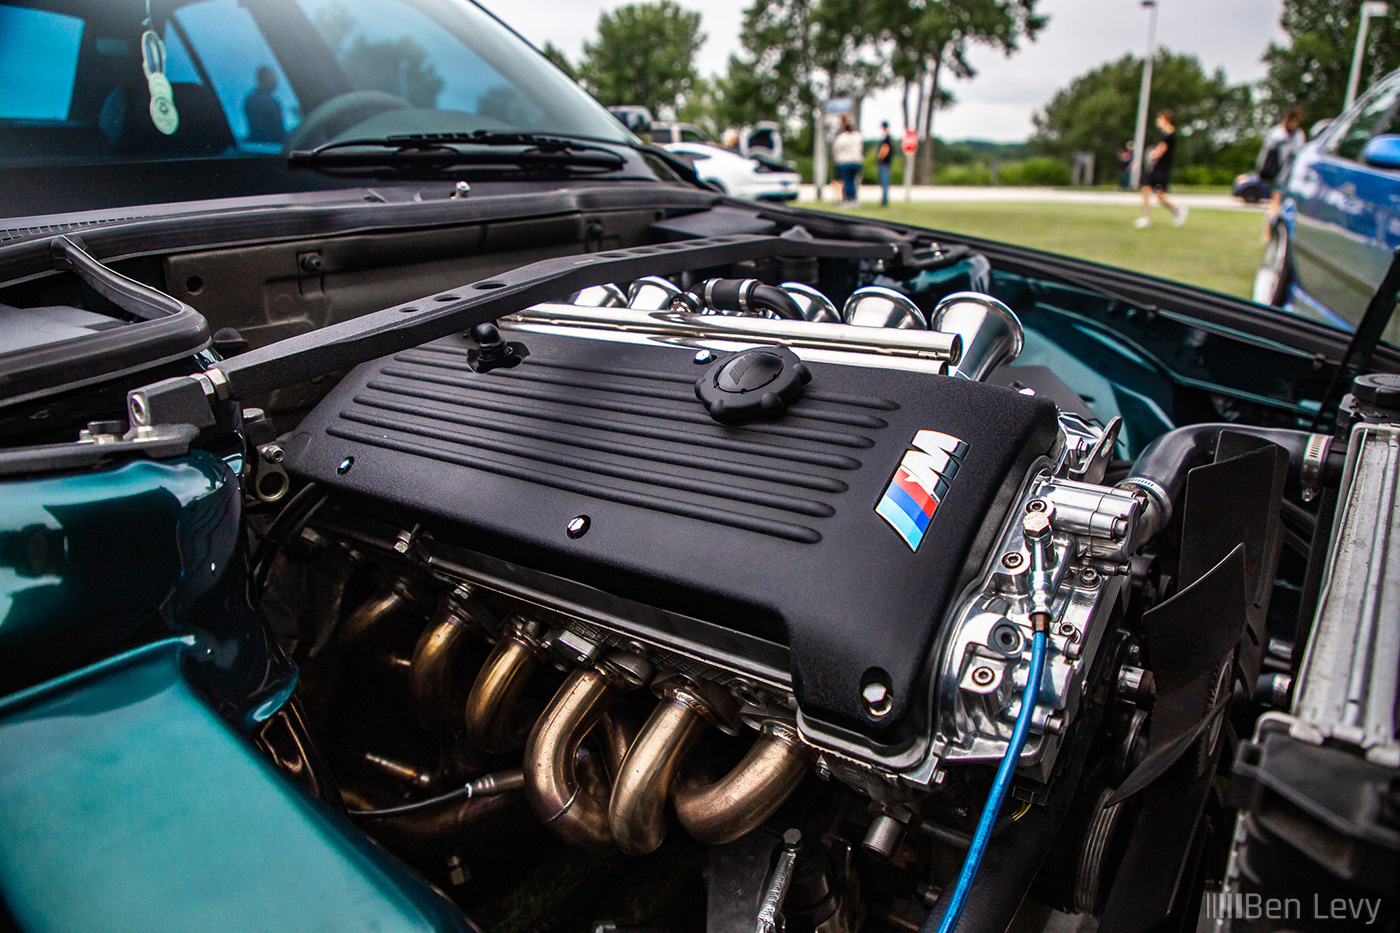 S54 Engine Swapped into E34 BMW